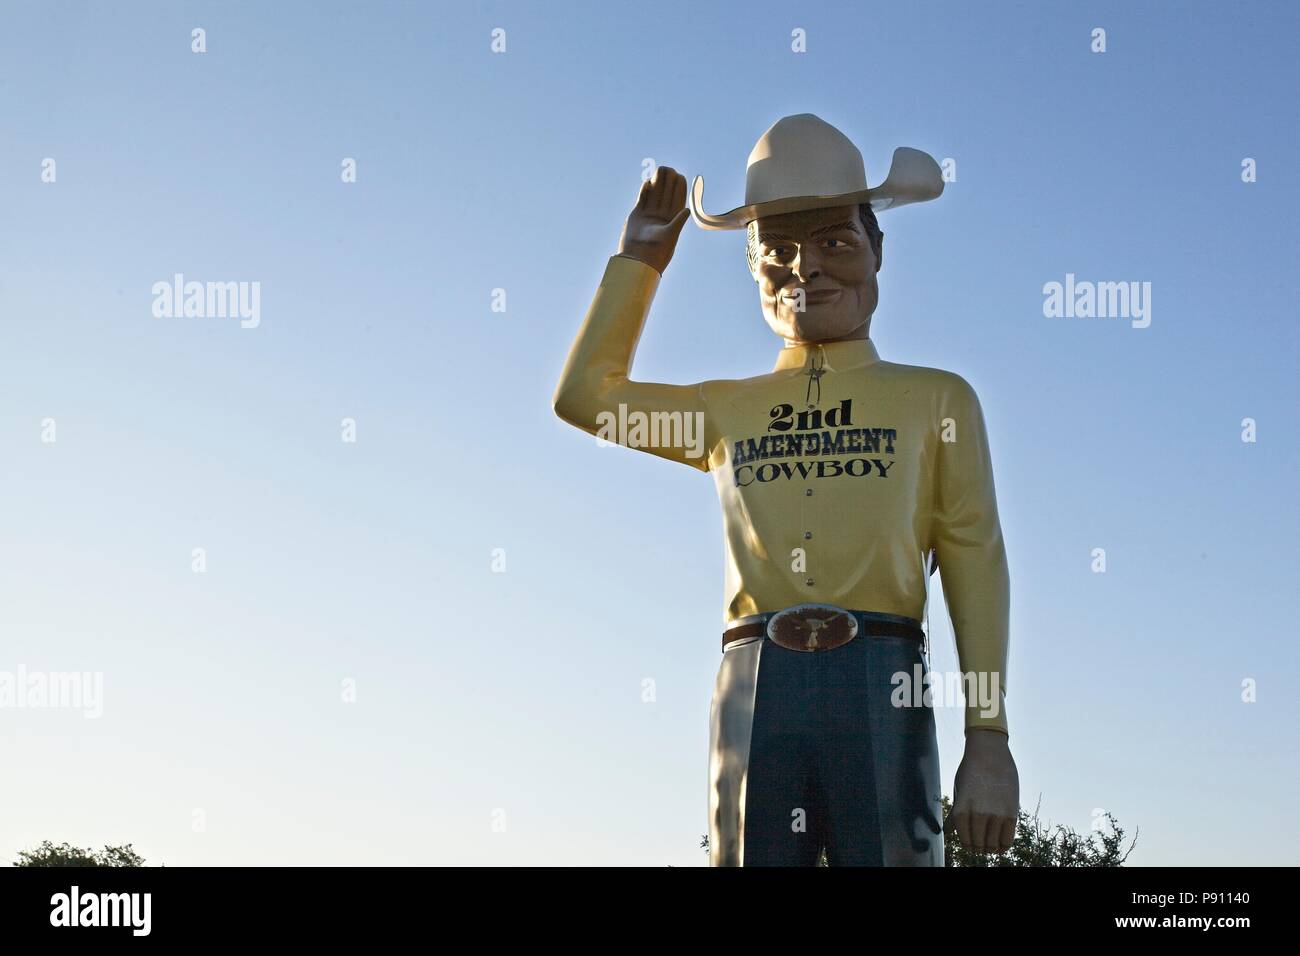 Der zweite Änderungsantrag cowboy Statue in Amarillo Texas an den Cadillac Ranch Kampingplatz ist ein Beweis für die Waffe besitzen Rechte der amerikanischen Bürger Stockfoto